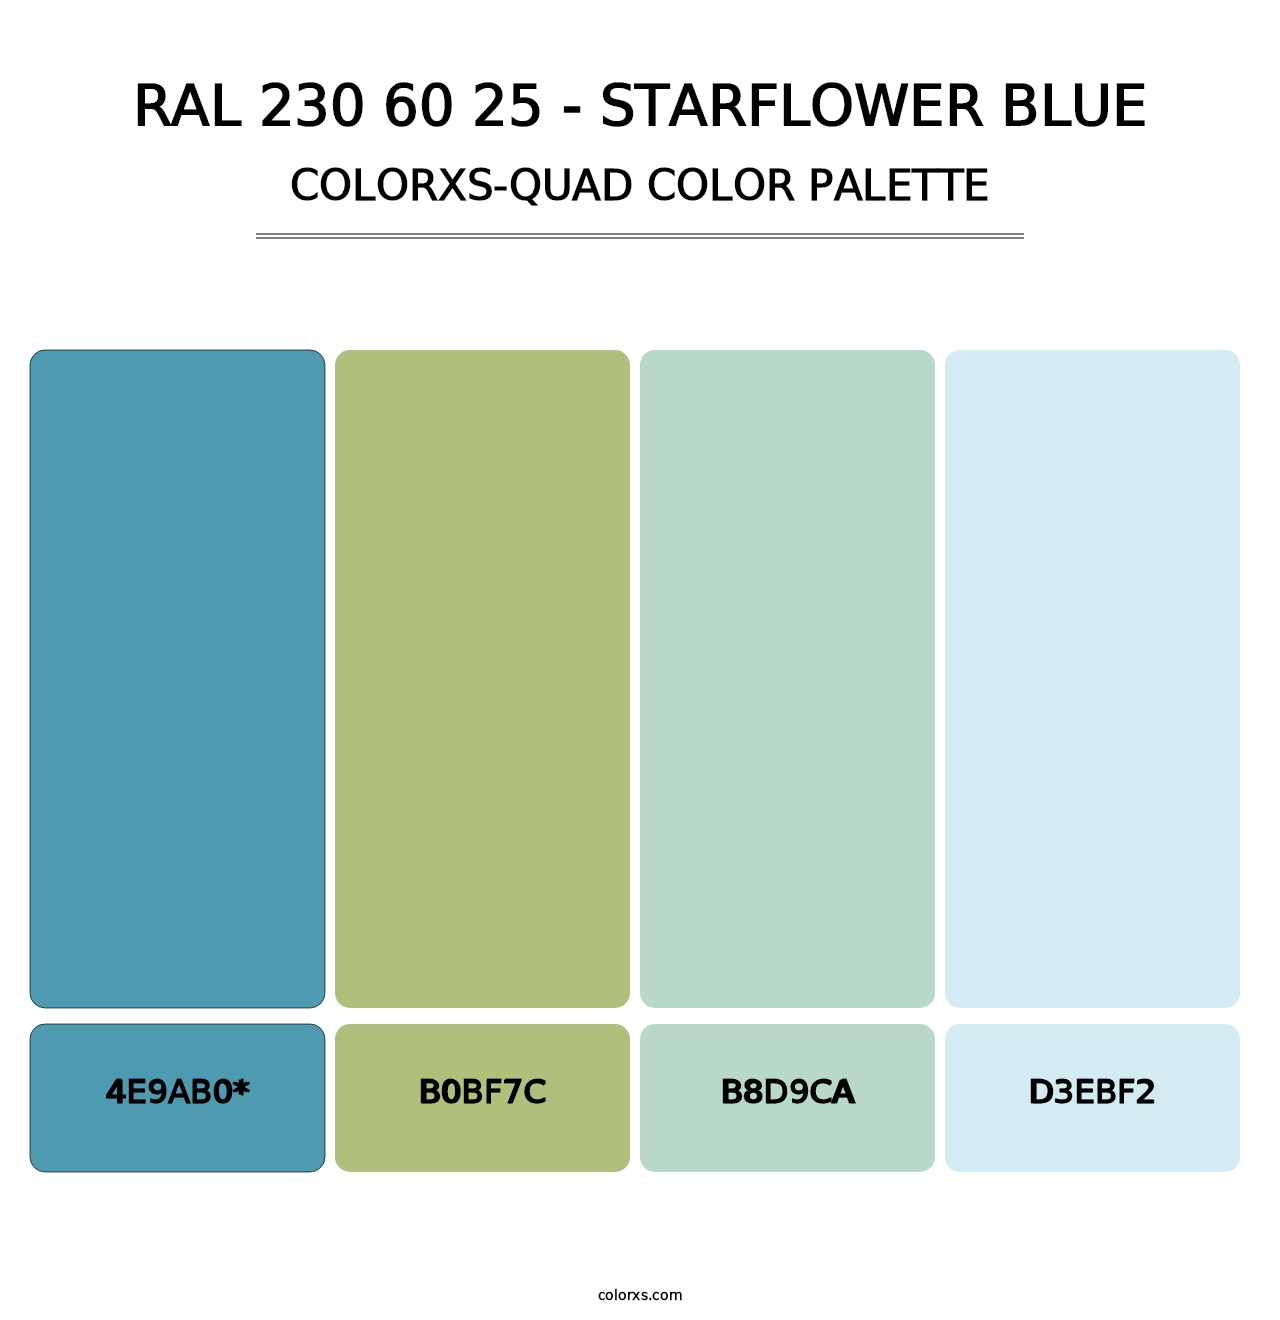 RAL 230 60 25 - Starflower Blue - Colorxs Quad Palette